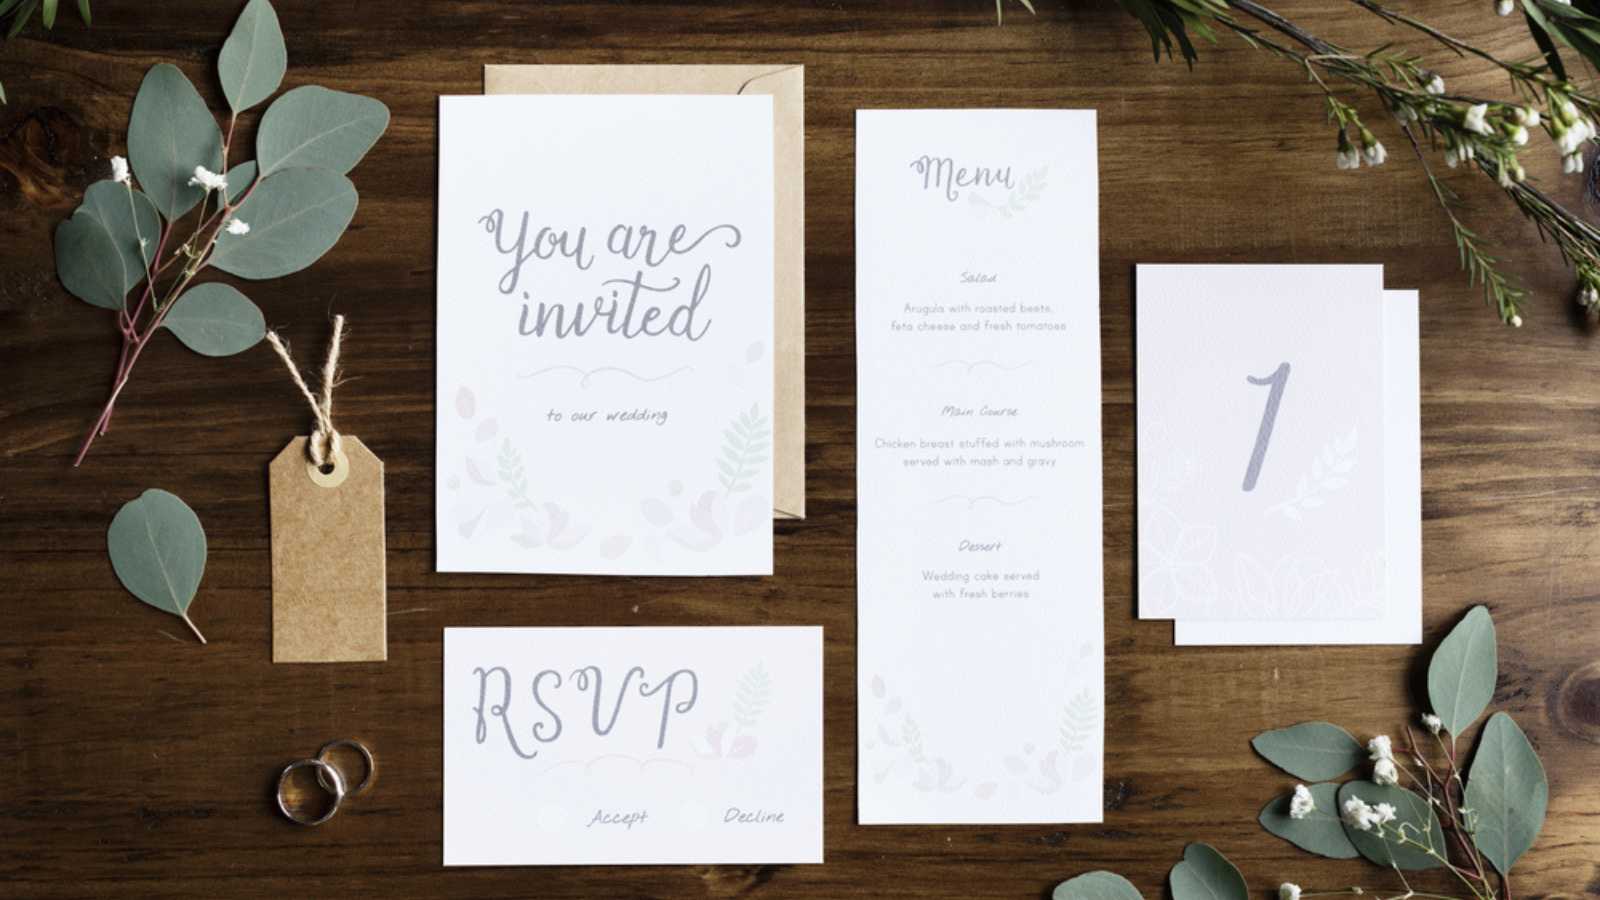 Marriage invitation